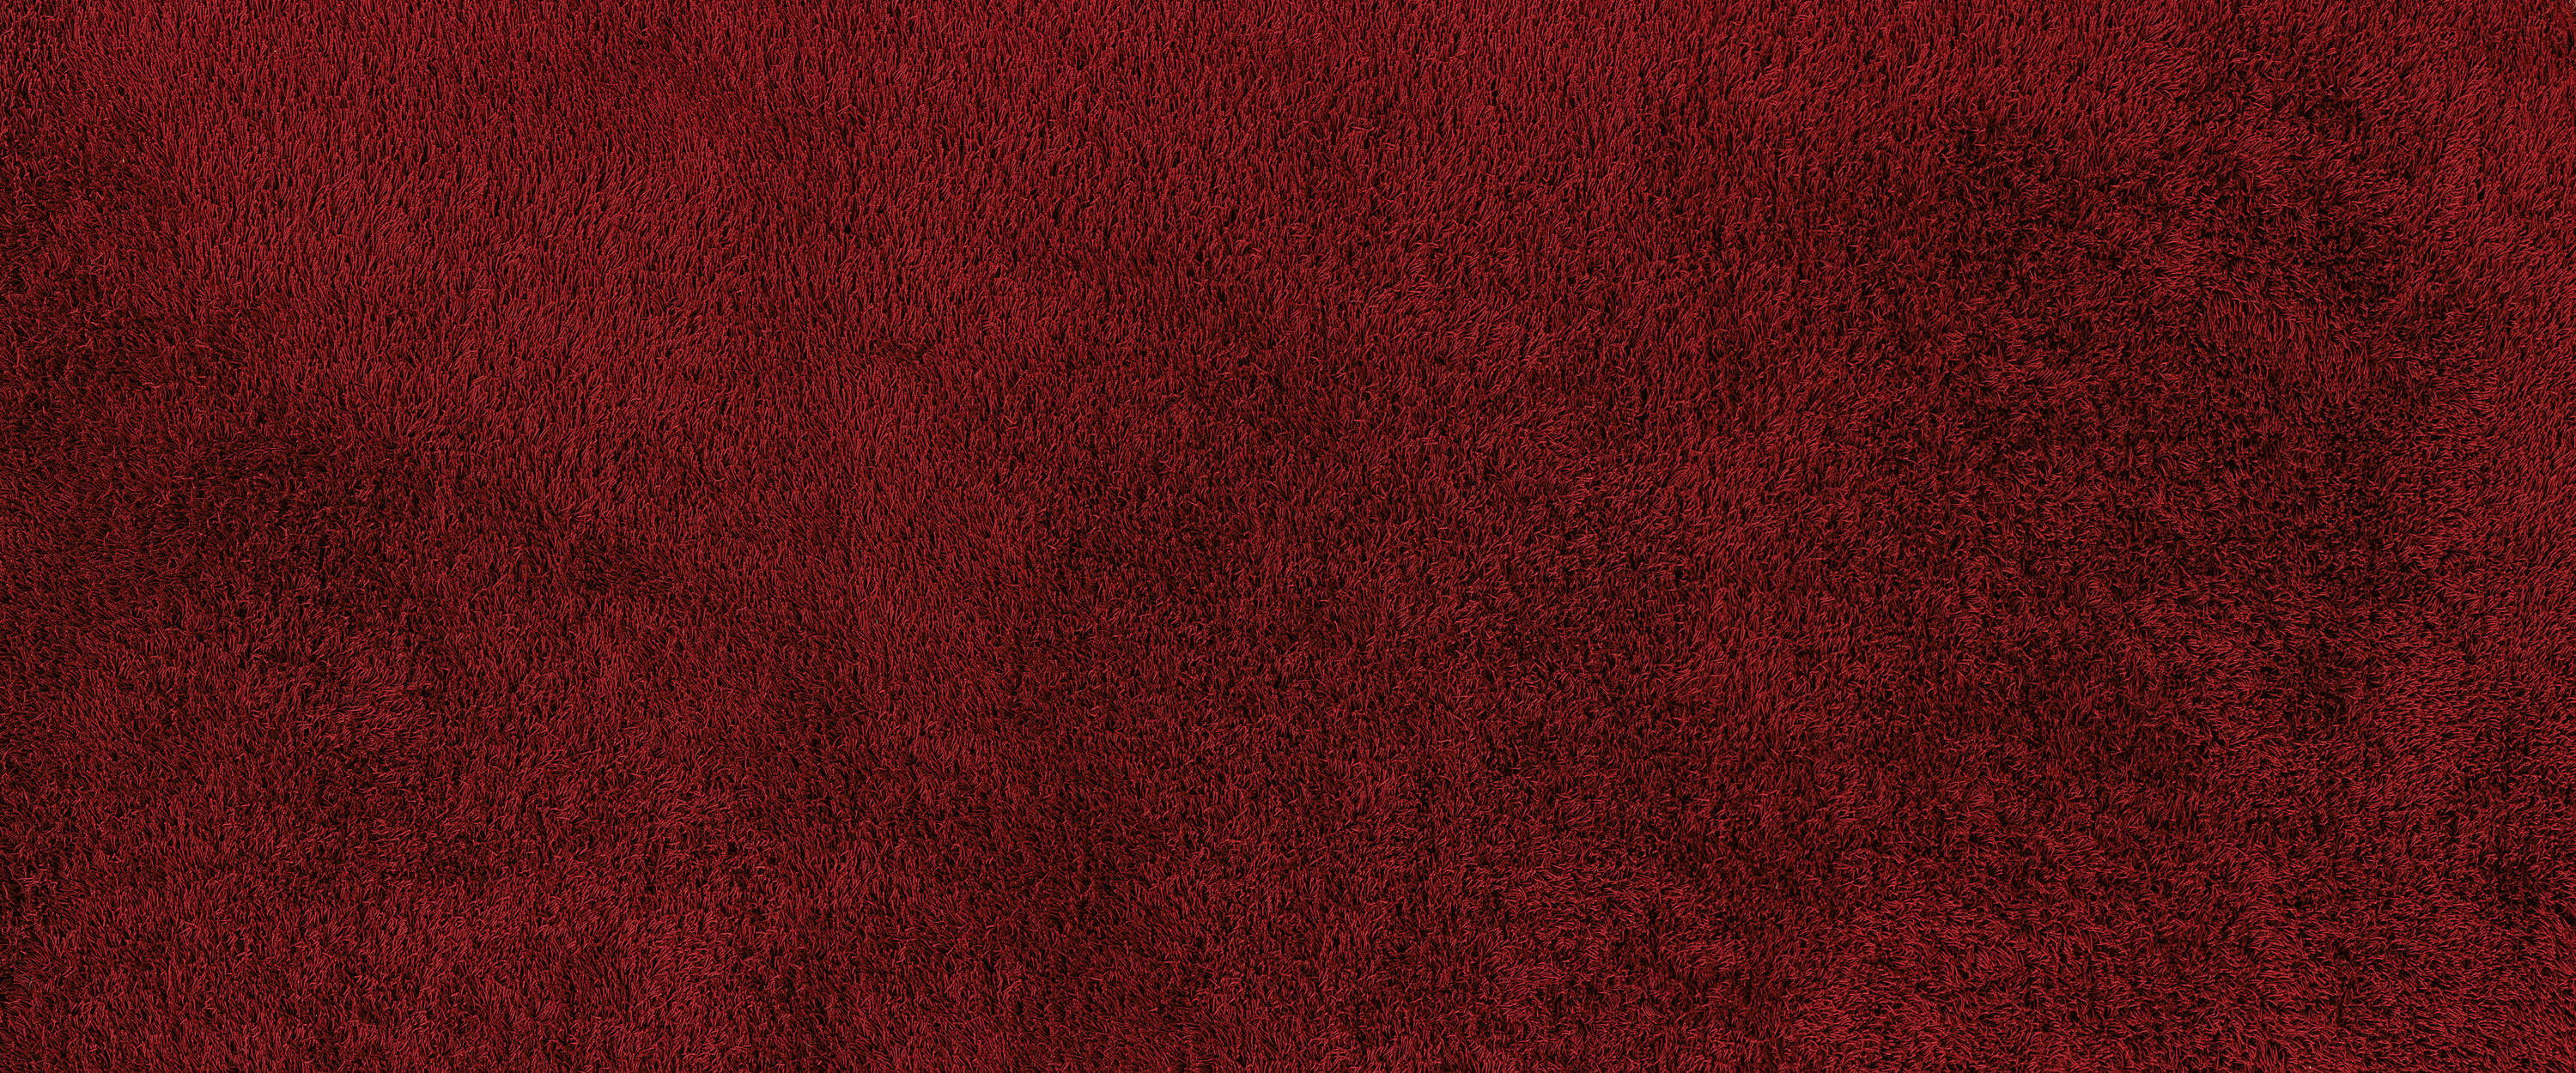             Particolare murale di un tappeto rosso
        